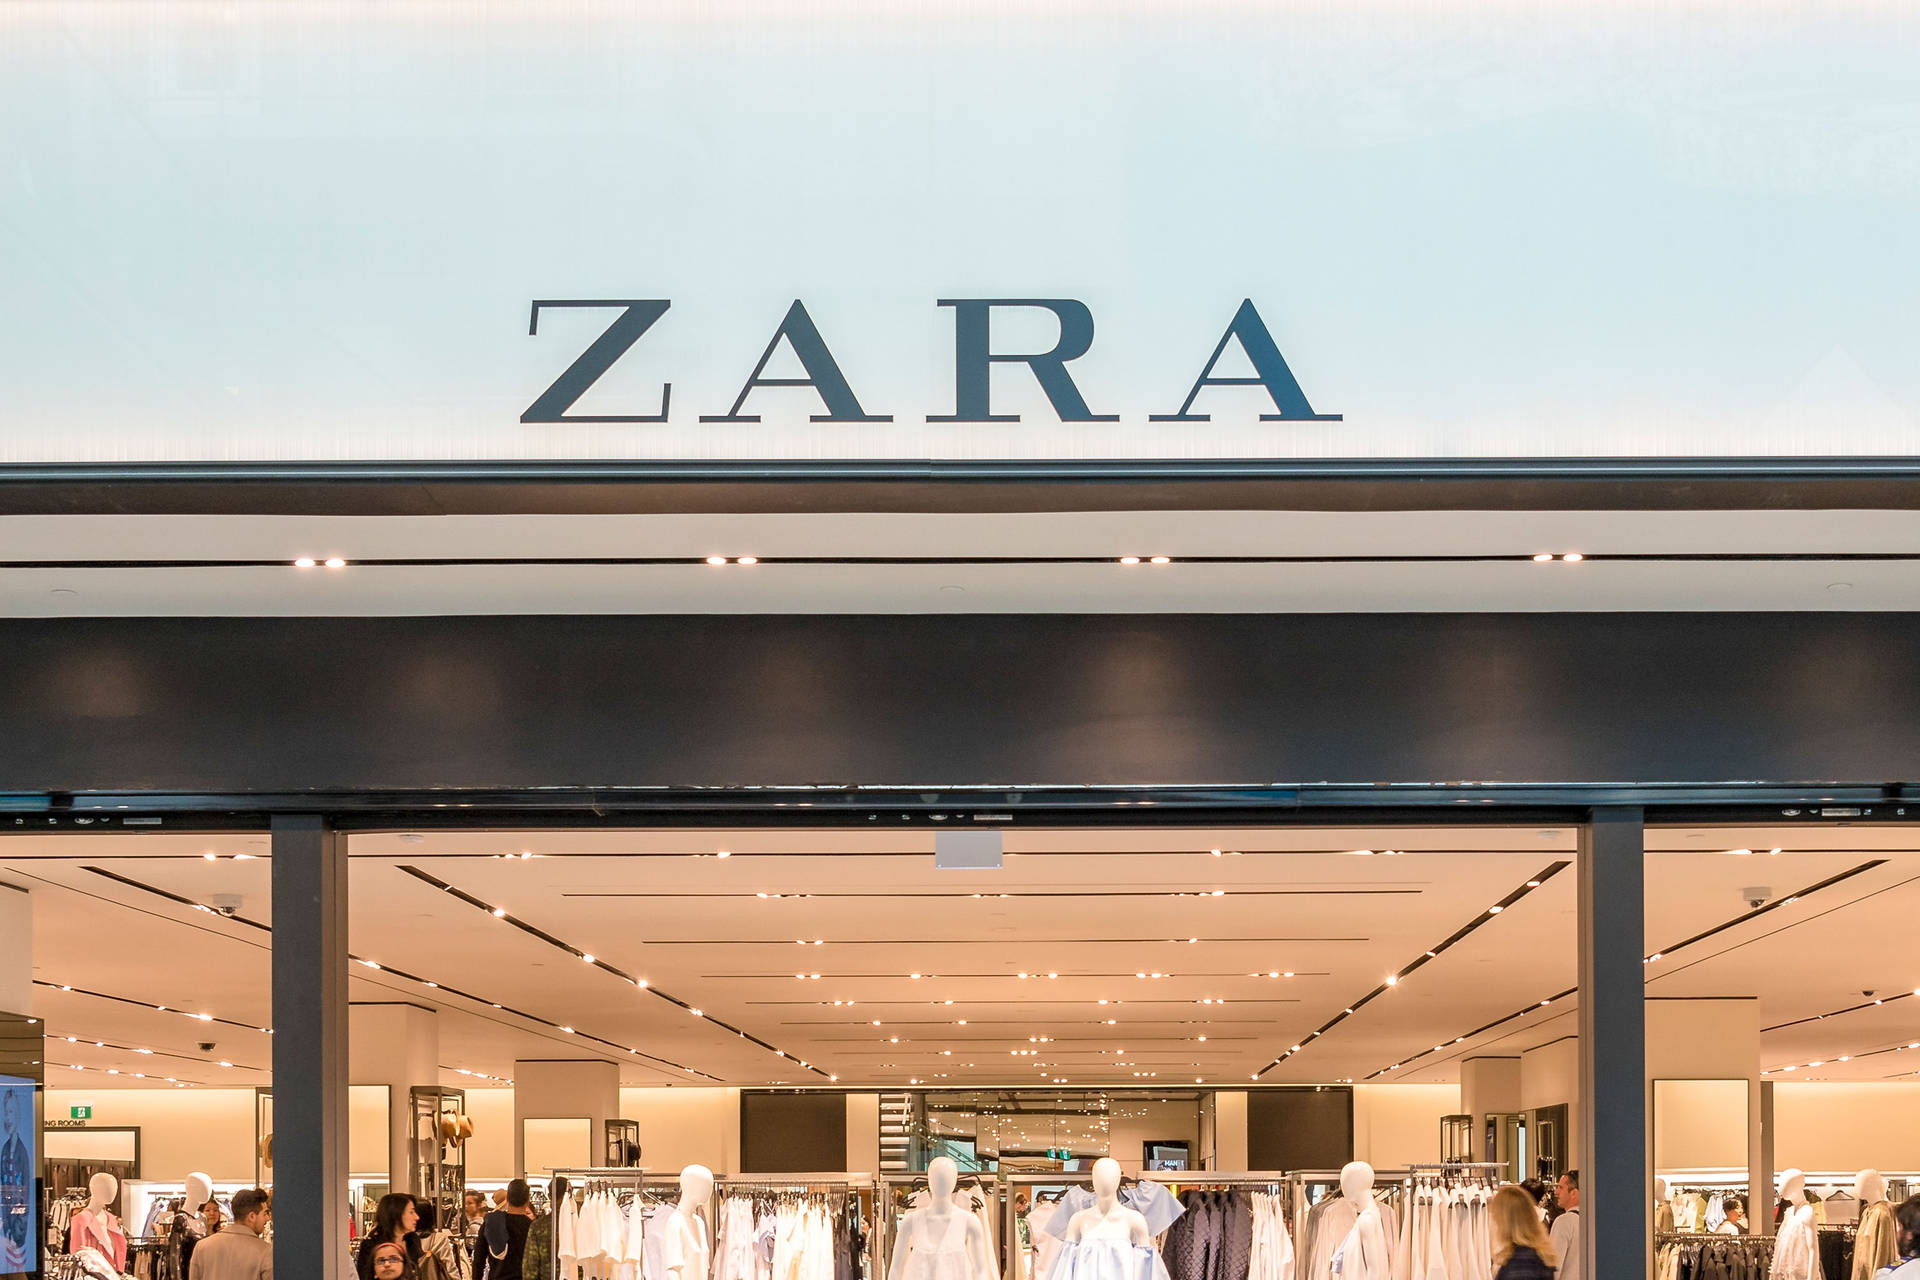 Zara Store Entrance Signage Background